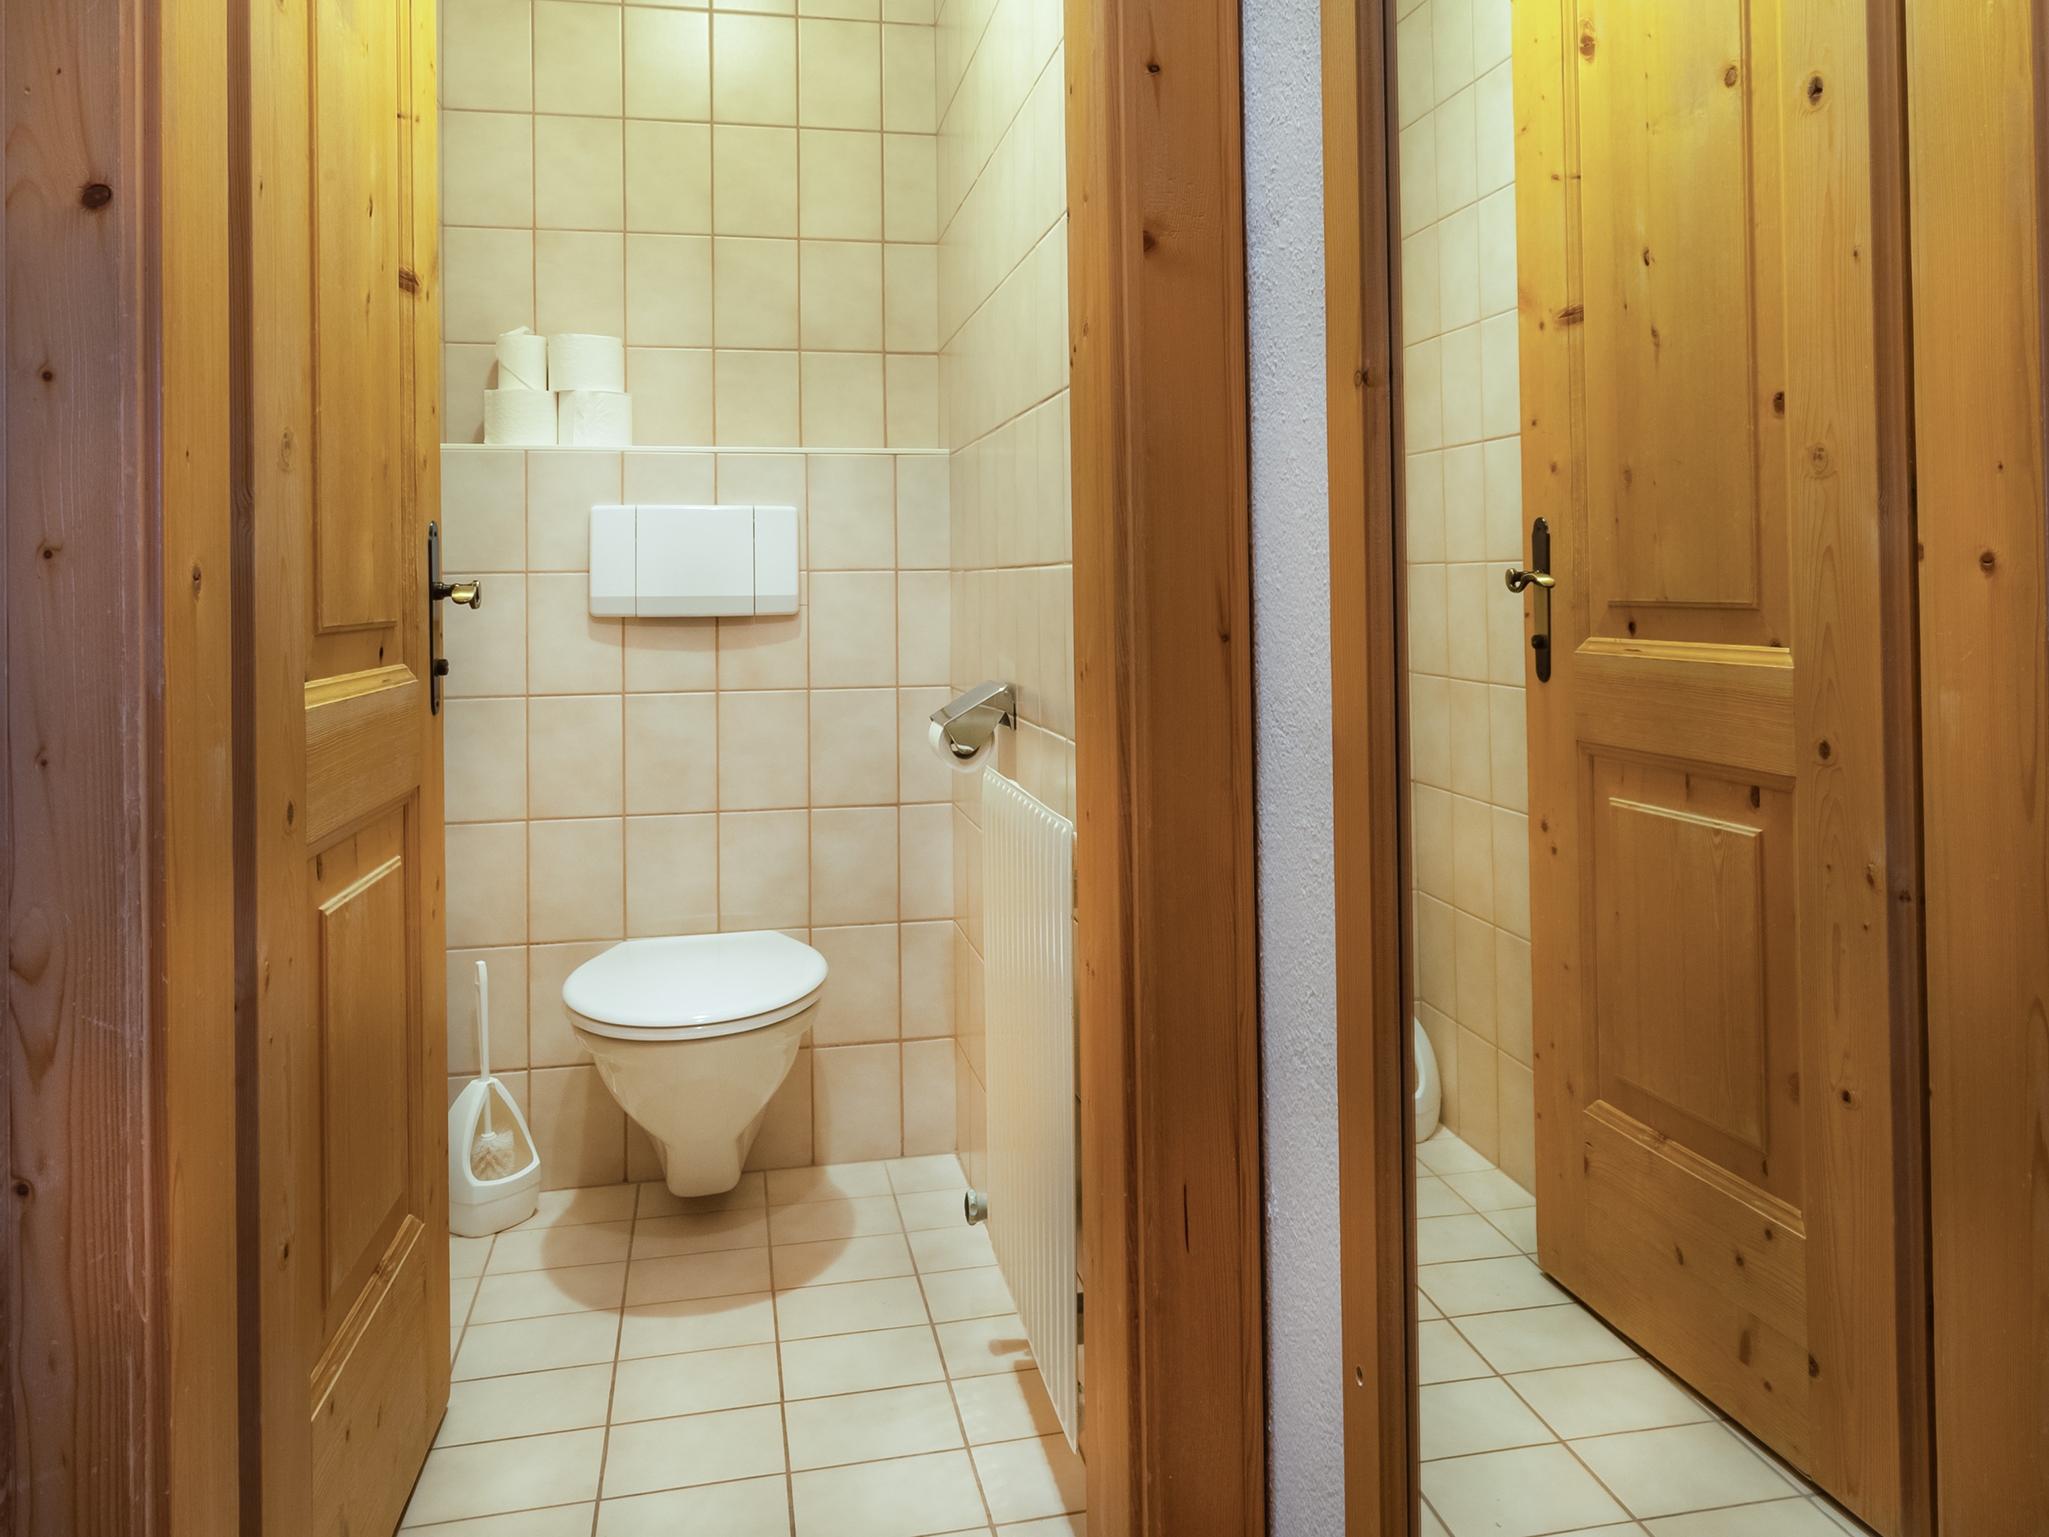 Apart Furcletta: Appartement für 4 Personen - WC (Beispiel)